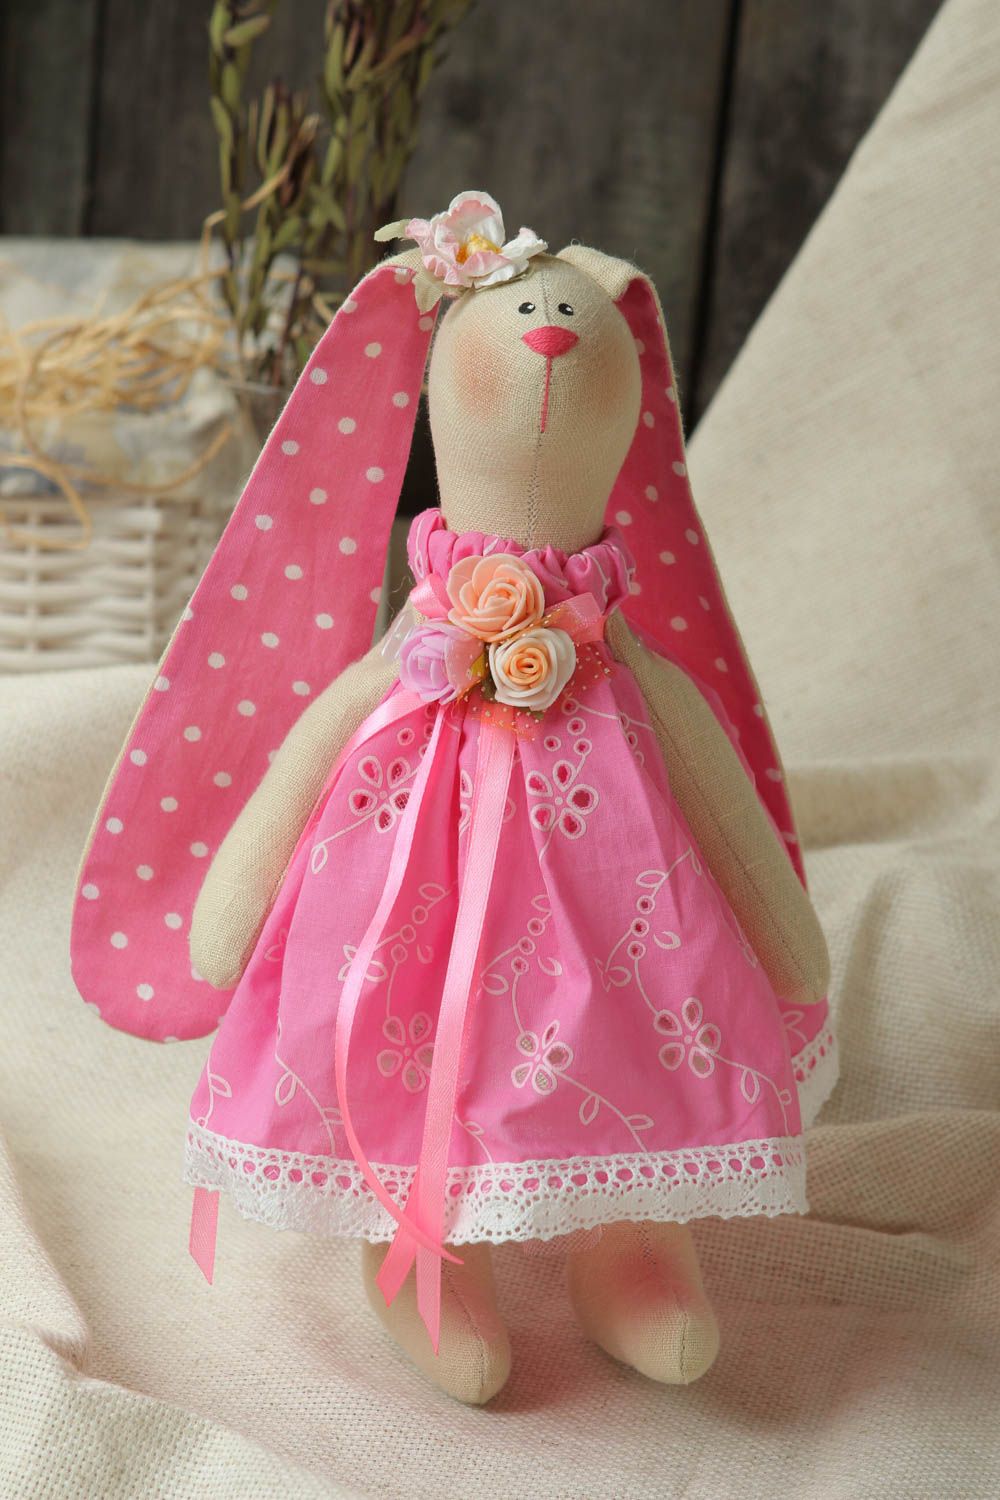 Игрушка ручной работы игрушка зайка в розовом платье оригинальная игрушка  фото 1